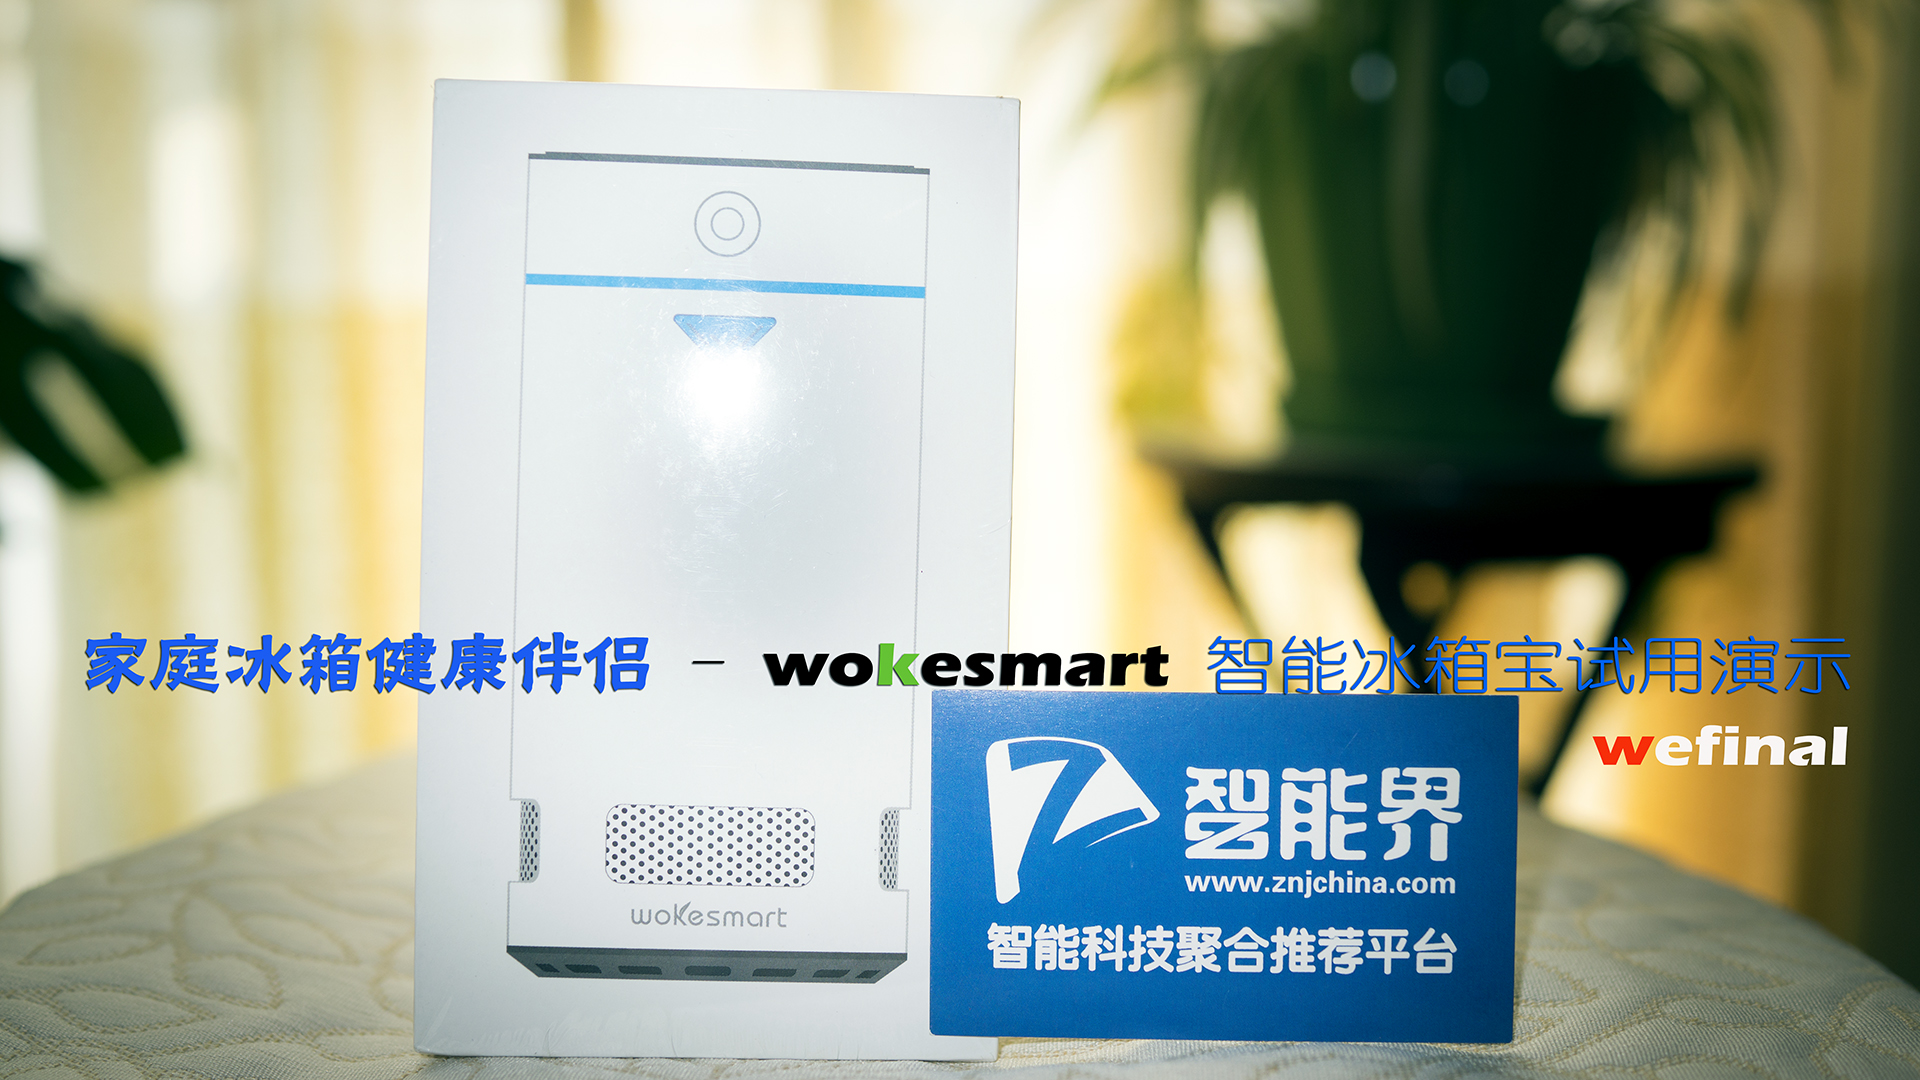 【家庭冰箱的健康伴侣】wokesmart智能冰箱宝试用演示